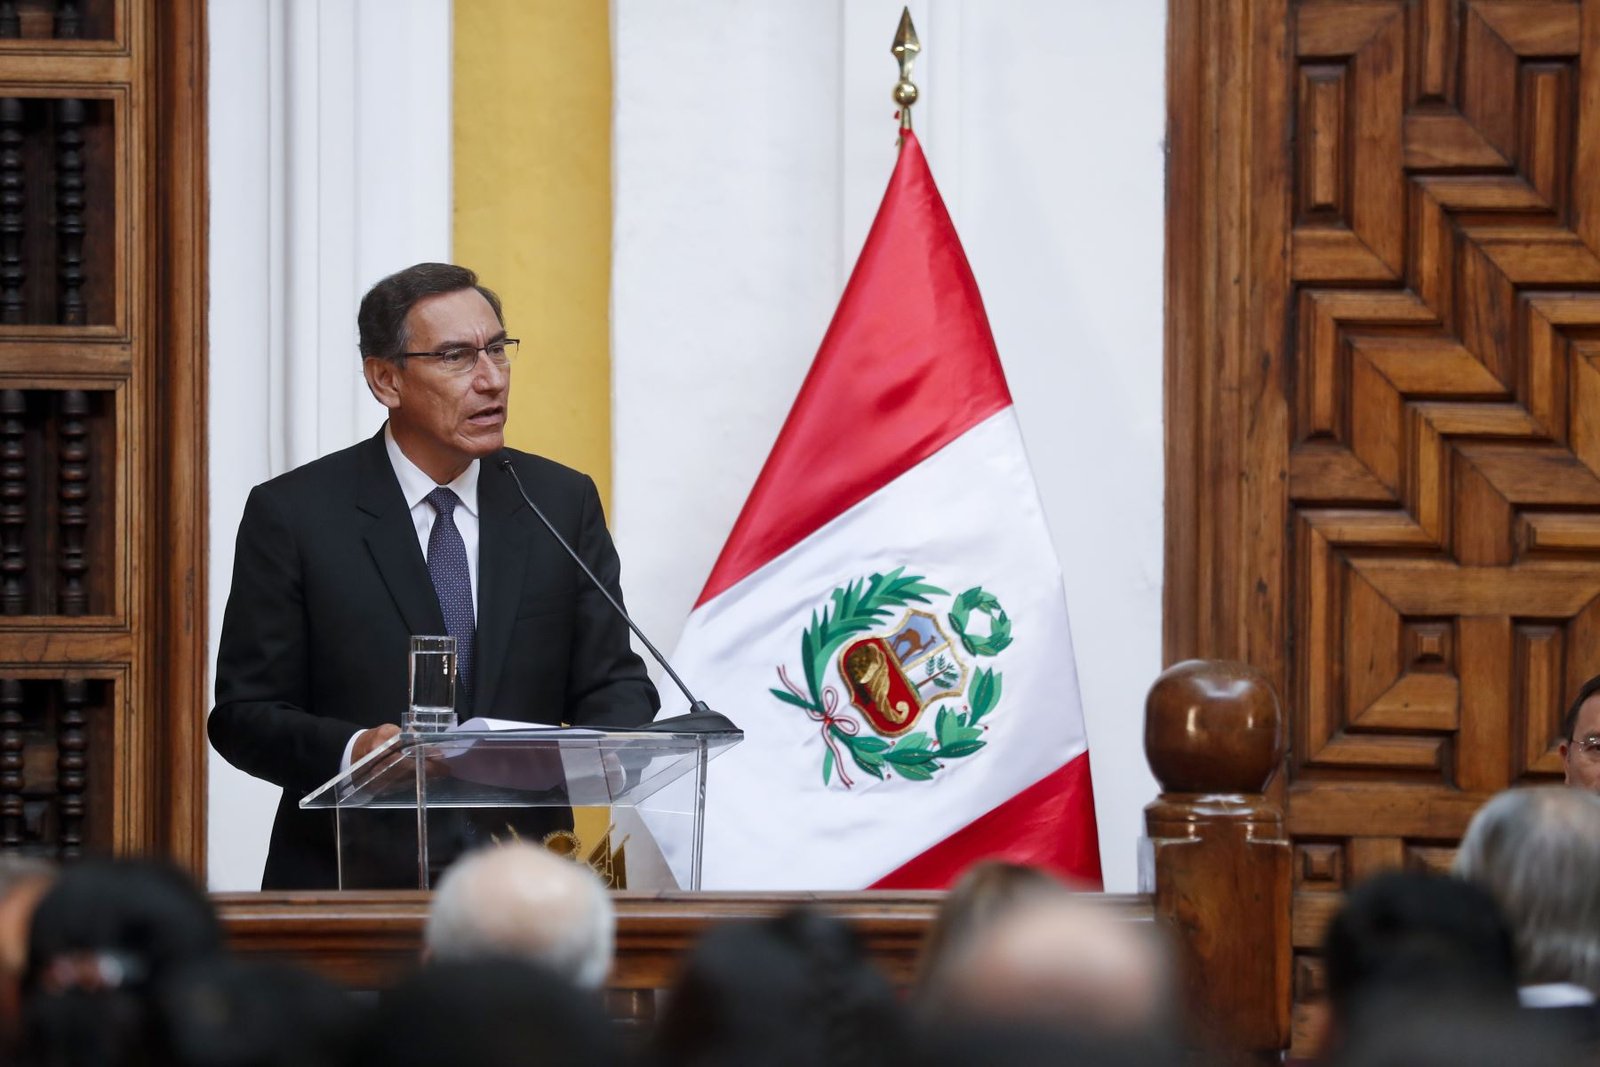 Presidente Vizcarra: “Con el respaldo ciudadano dejaremos atrás esta etapa”